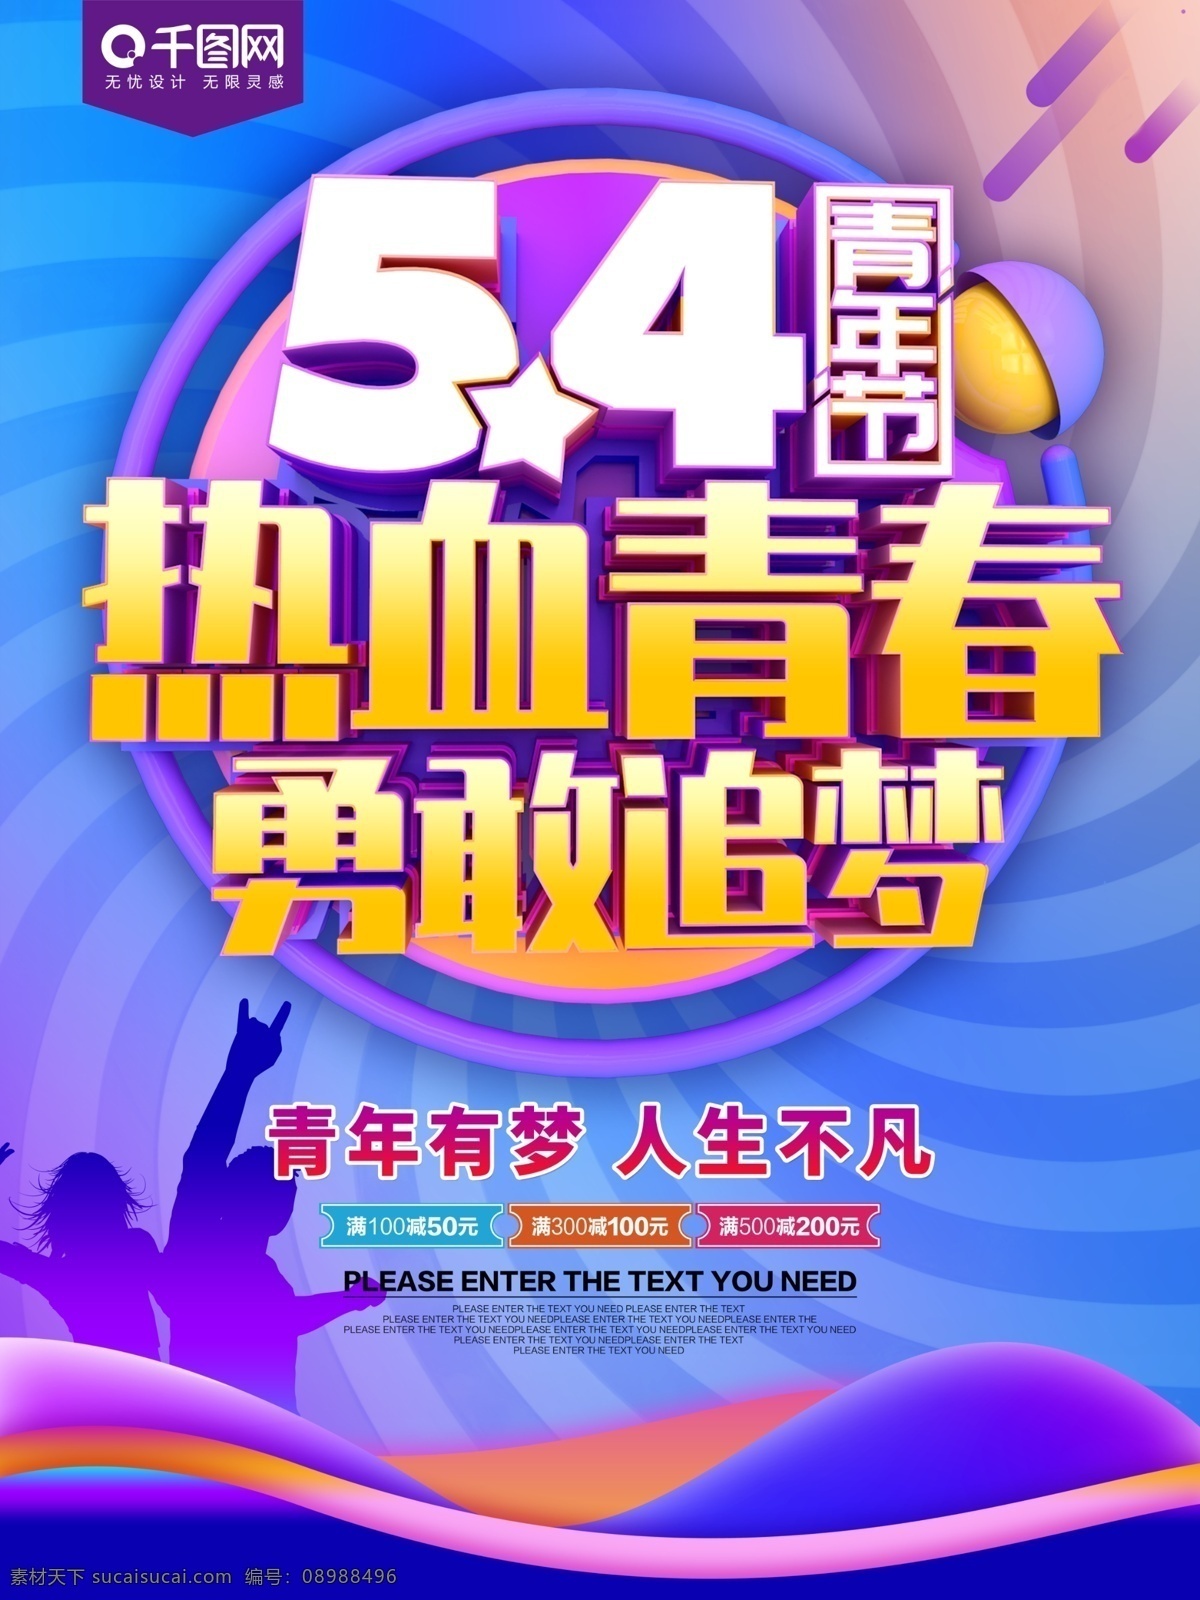 54 青年节 热血 青春 节日 海报 青年节海报 五四 五四青年节 54青年节